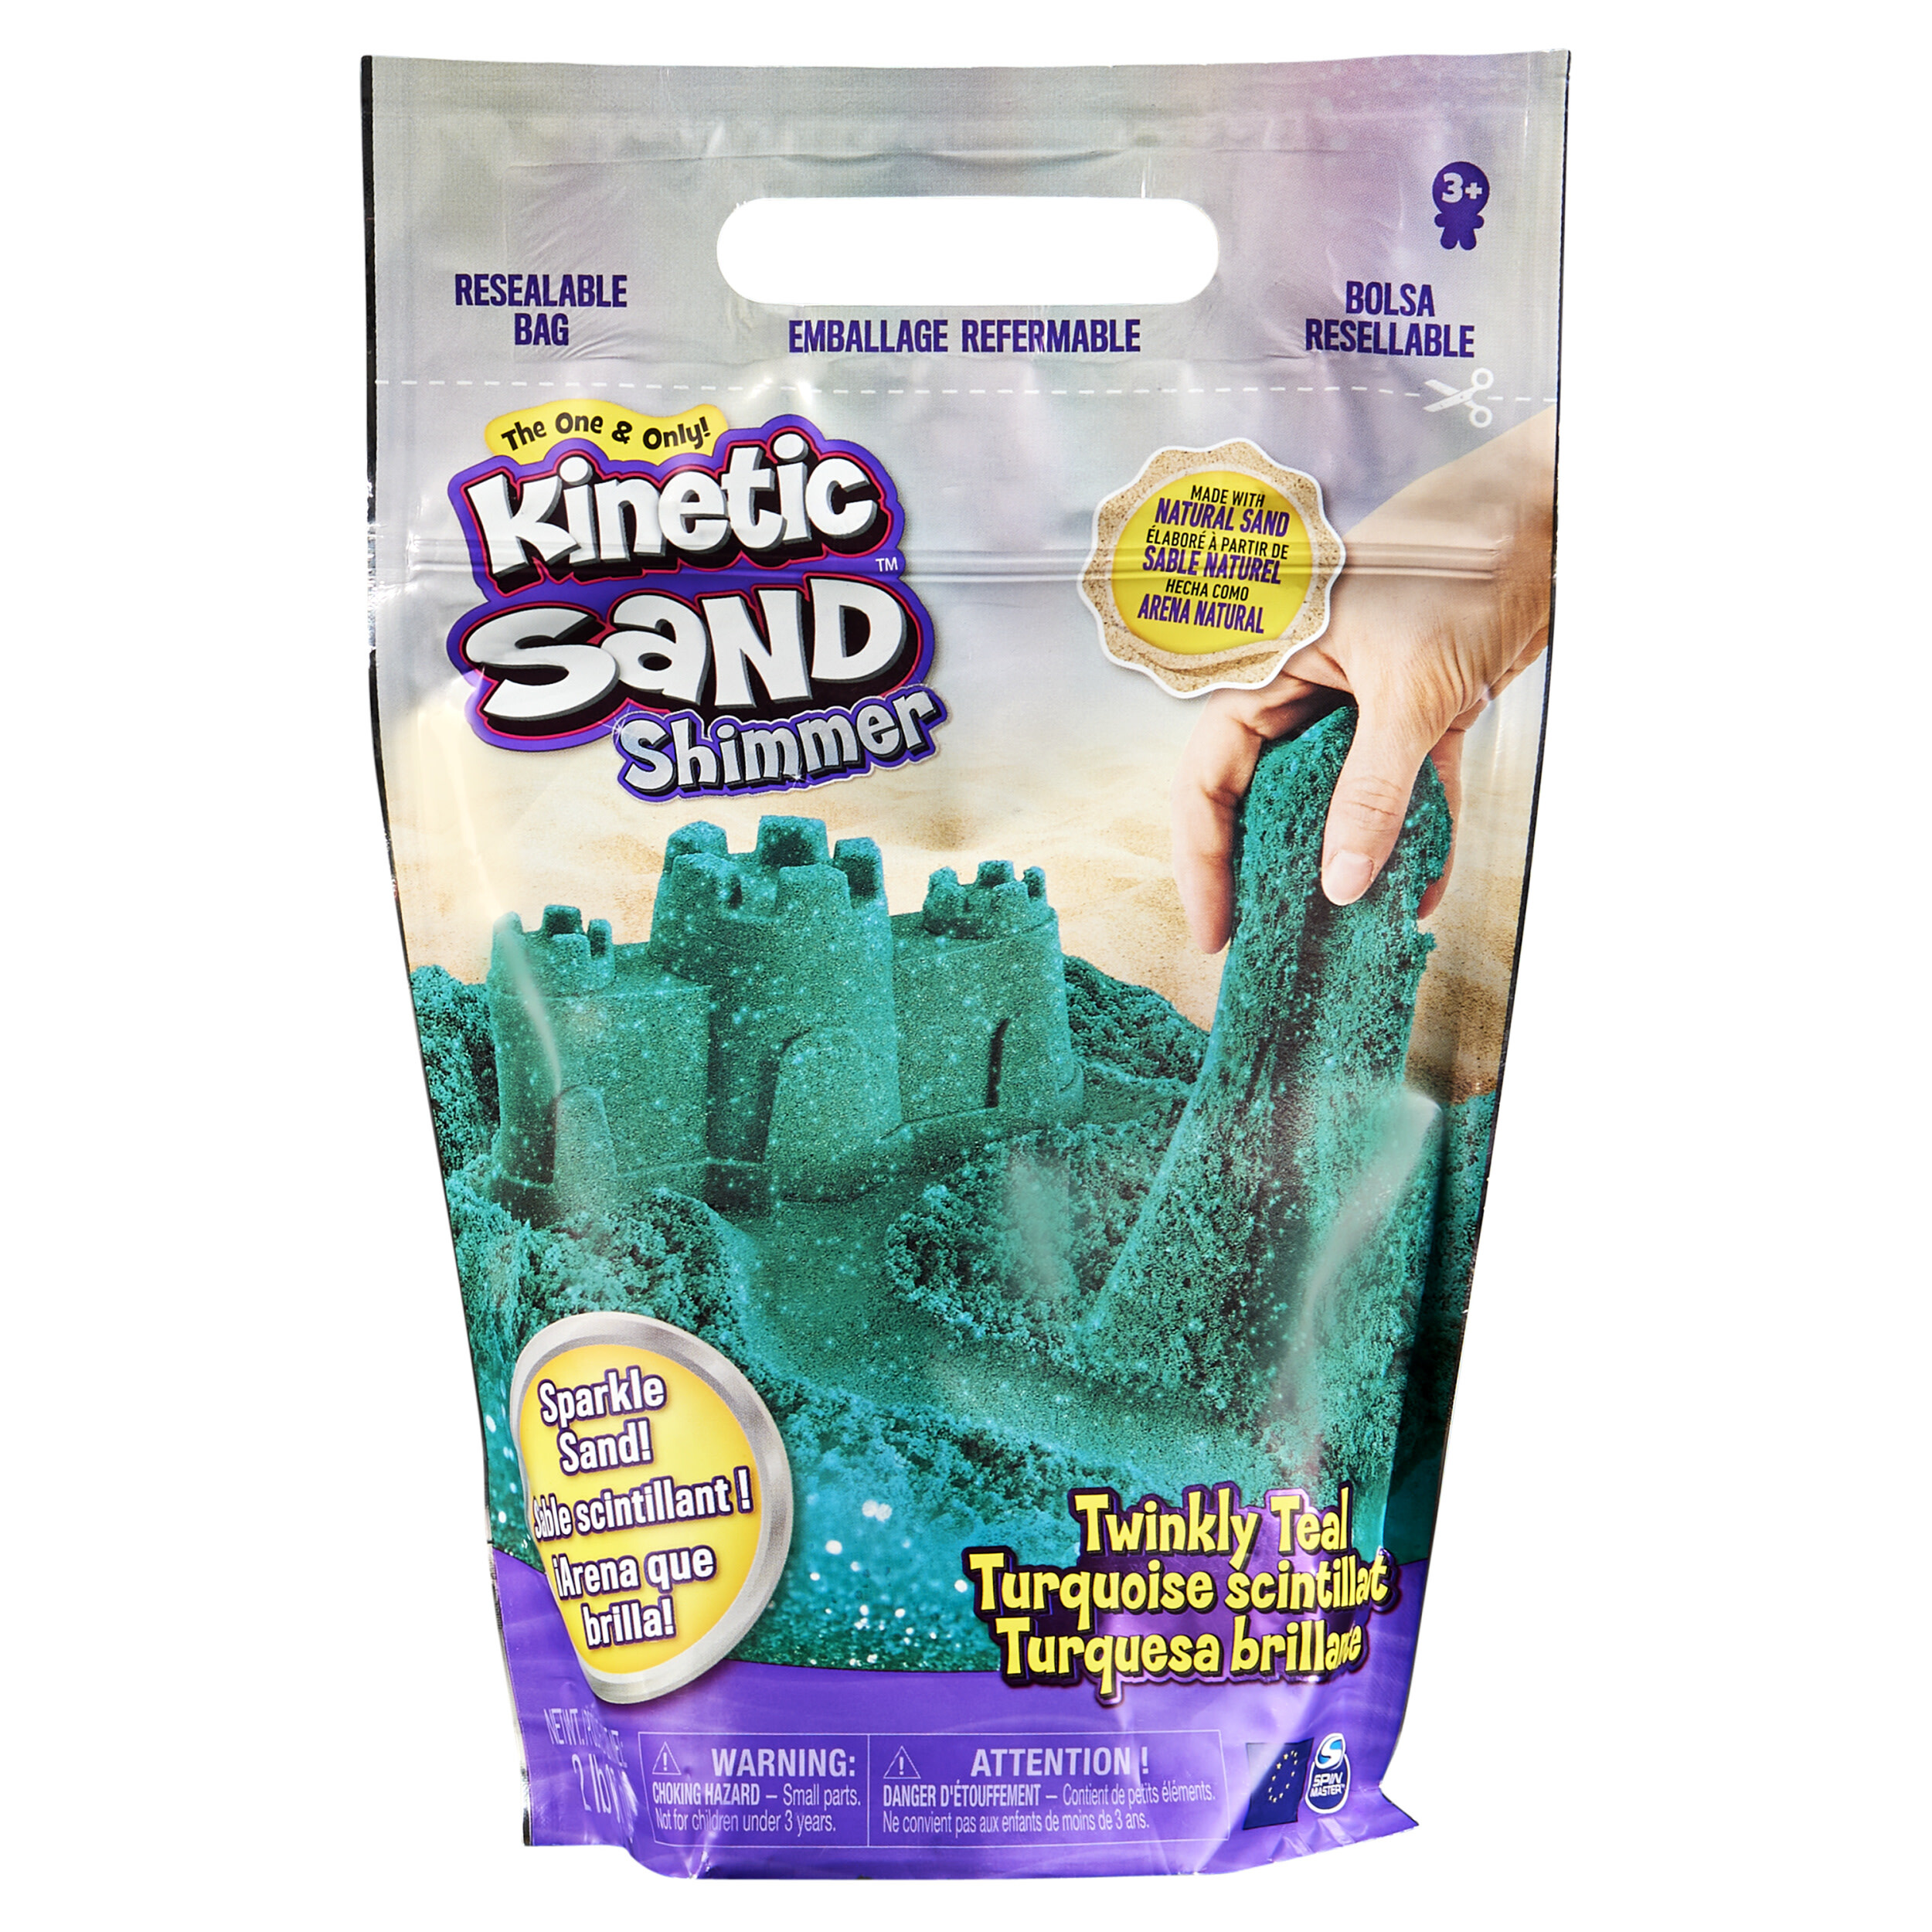 Kinetic Sand 907 g sprankelend blauwgroen natuurlijk glinsterend speelzand om te mengen kneden en maken - Sensorisch speelgoed